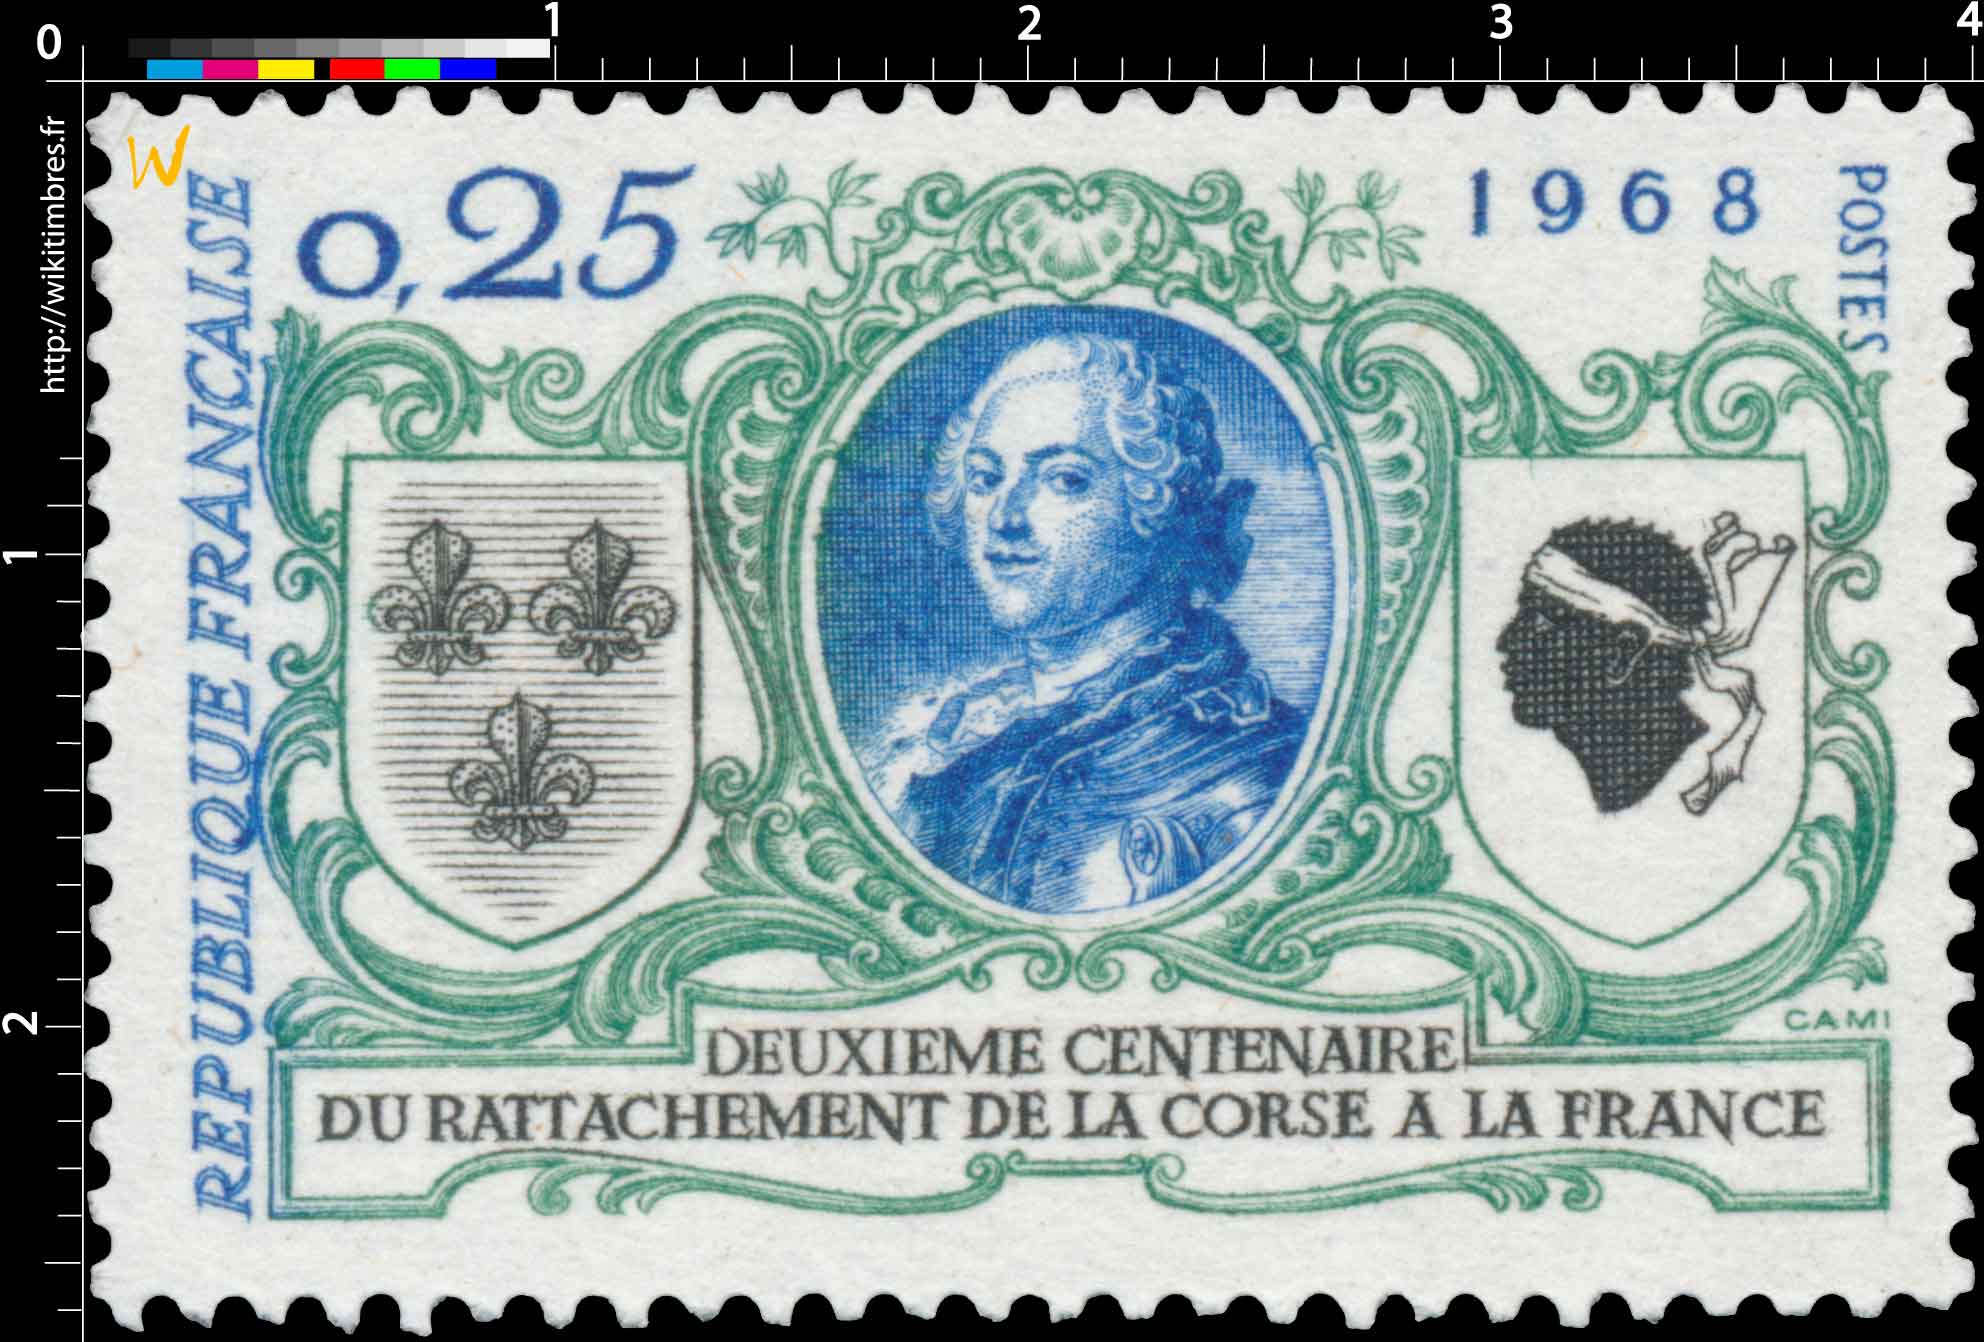 1968 DEUXIÈME CENTENAIRE DU RATTACHEMENT DE LA CORSE A LA FRANCE